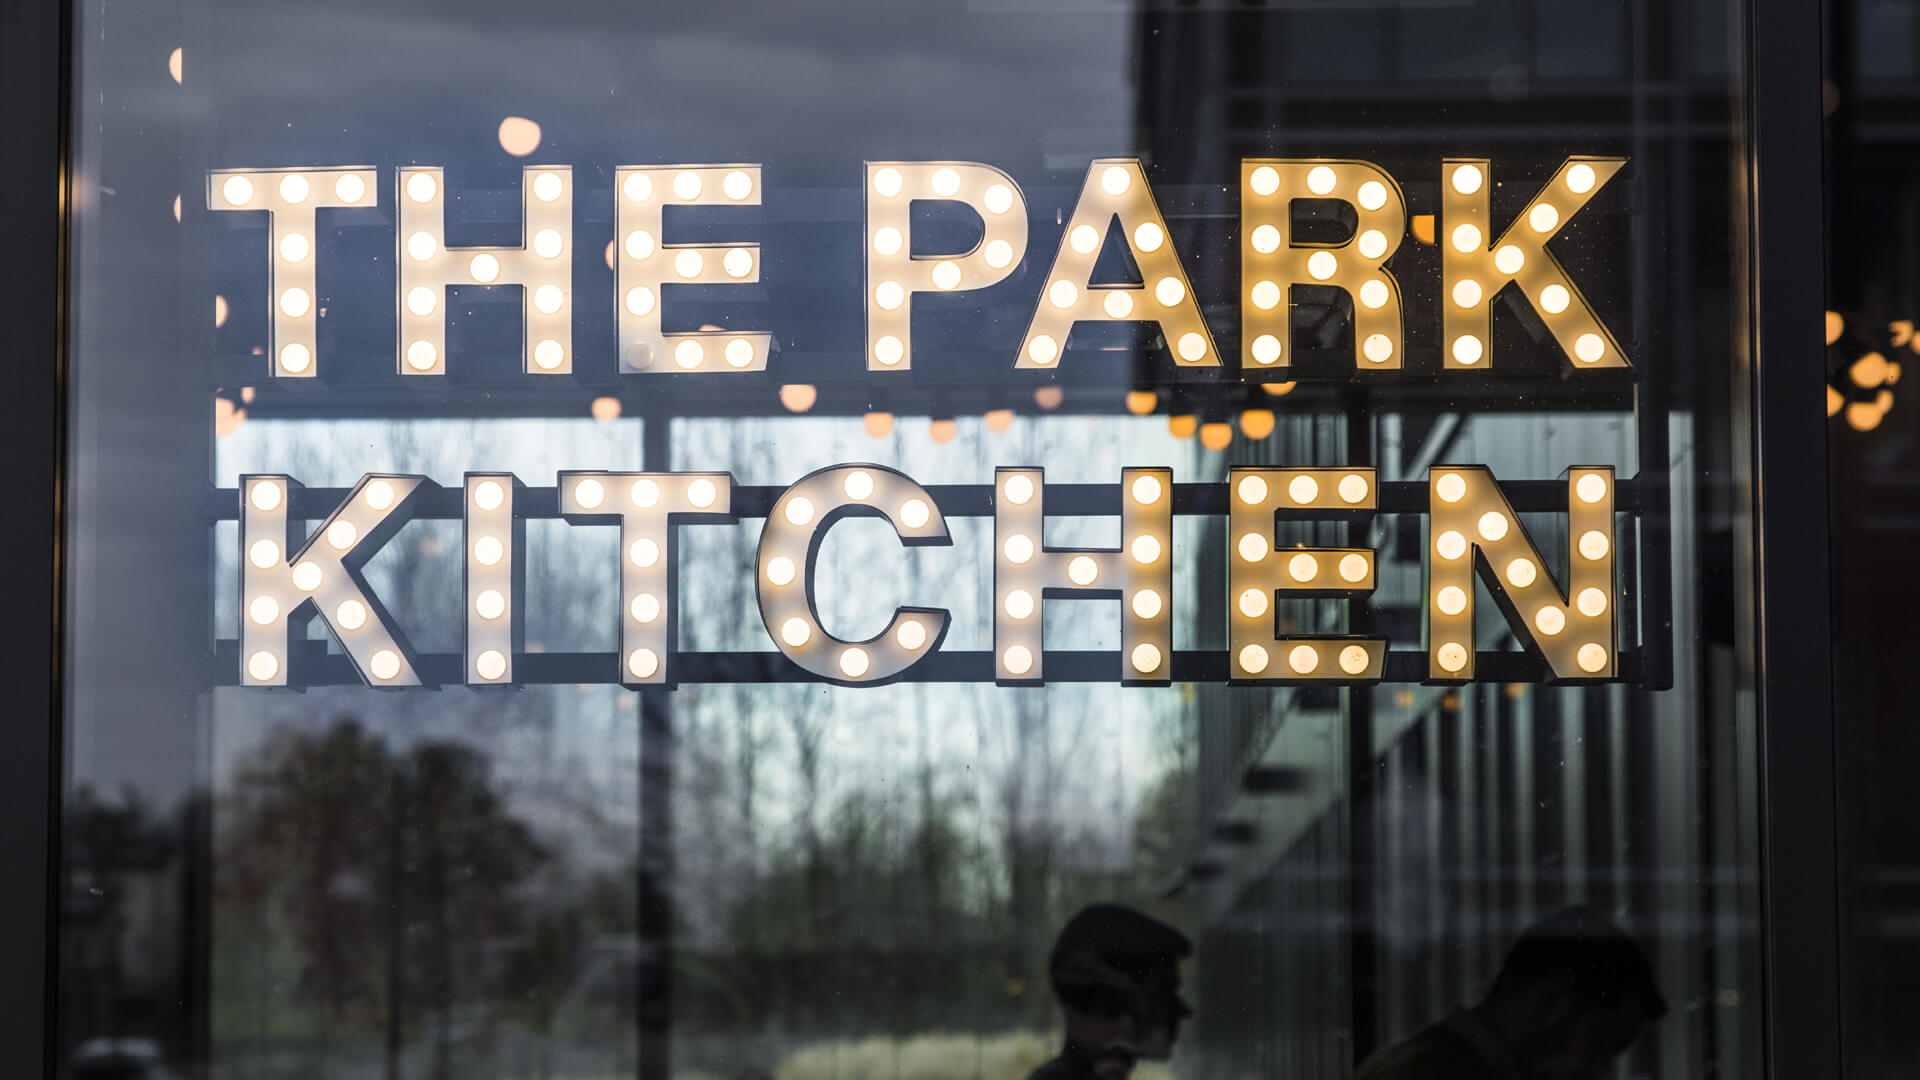 Le Parc Cuisine - La cuisine du parc - petites lettres avec ampoules placées derrière le verre